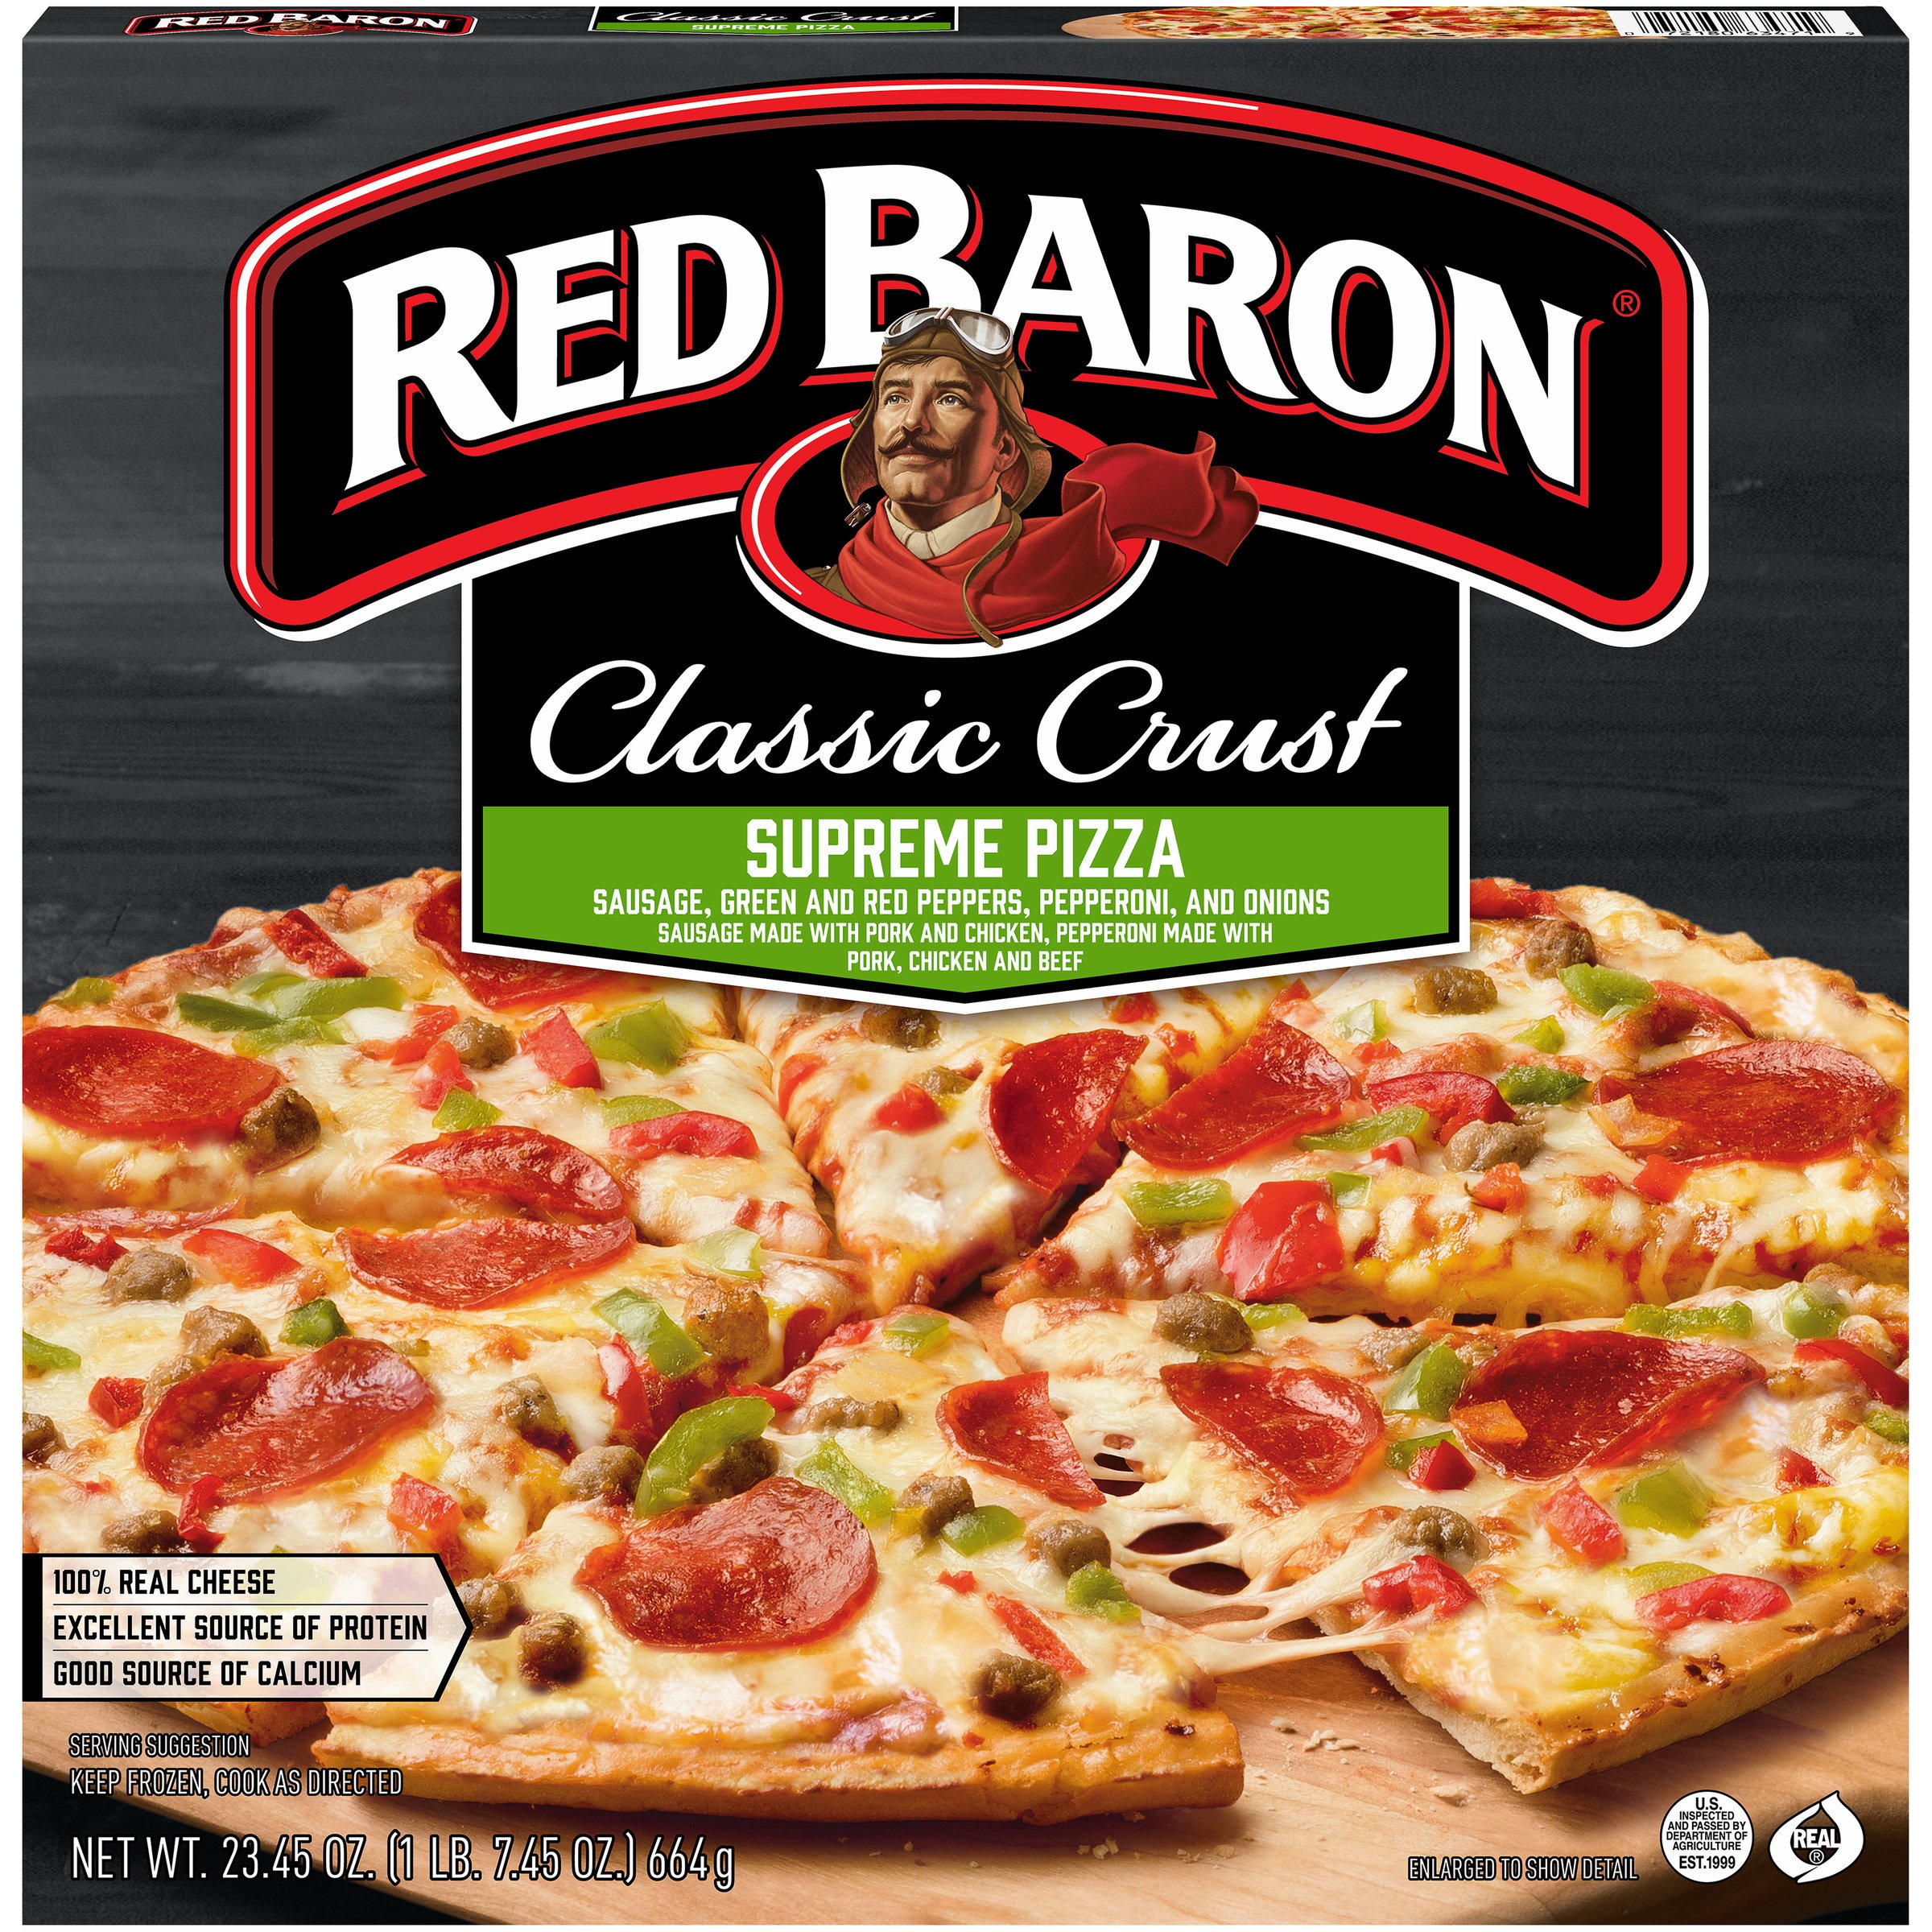 Red Baron Classic Crust Supreme Pizza